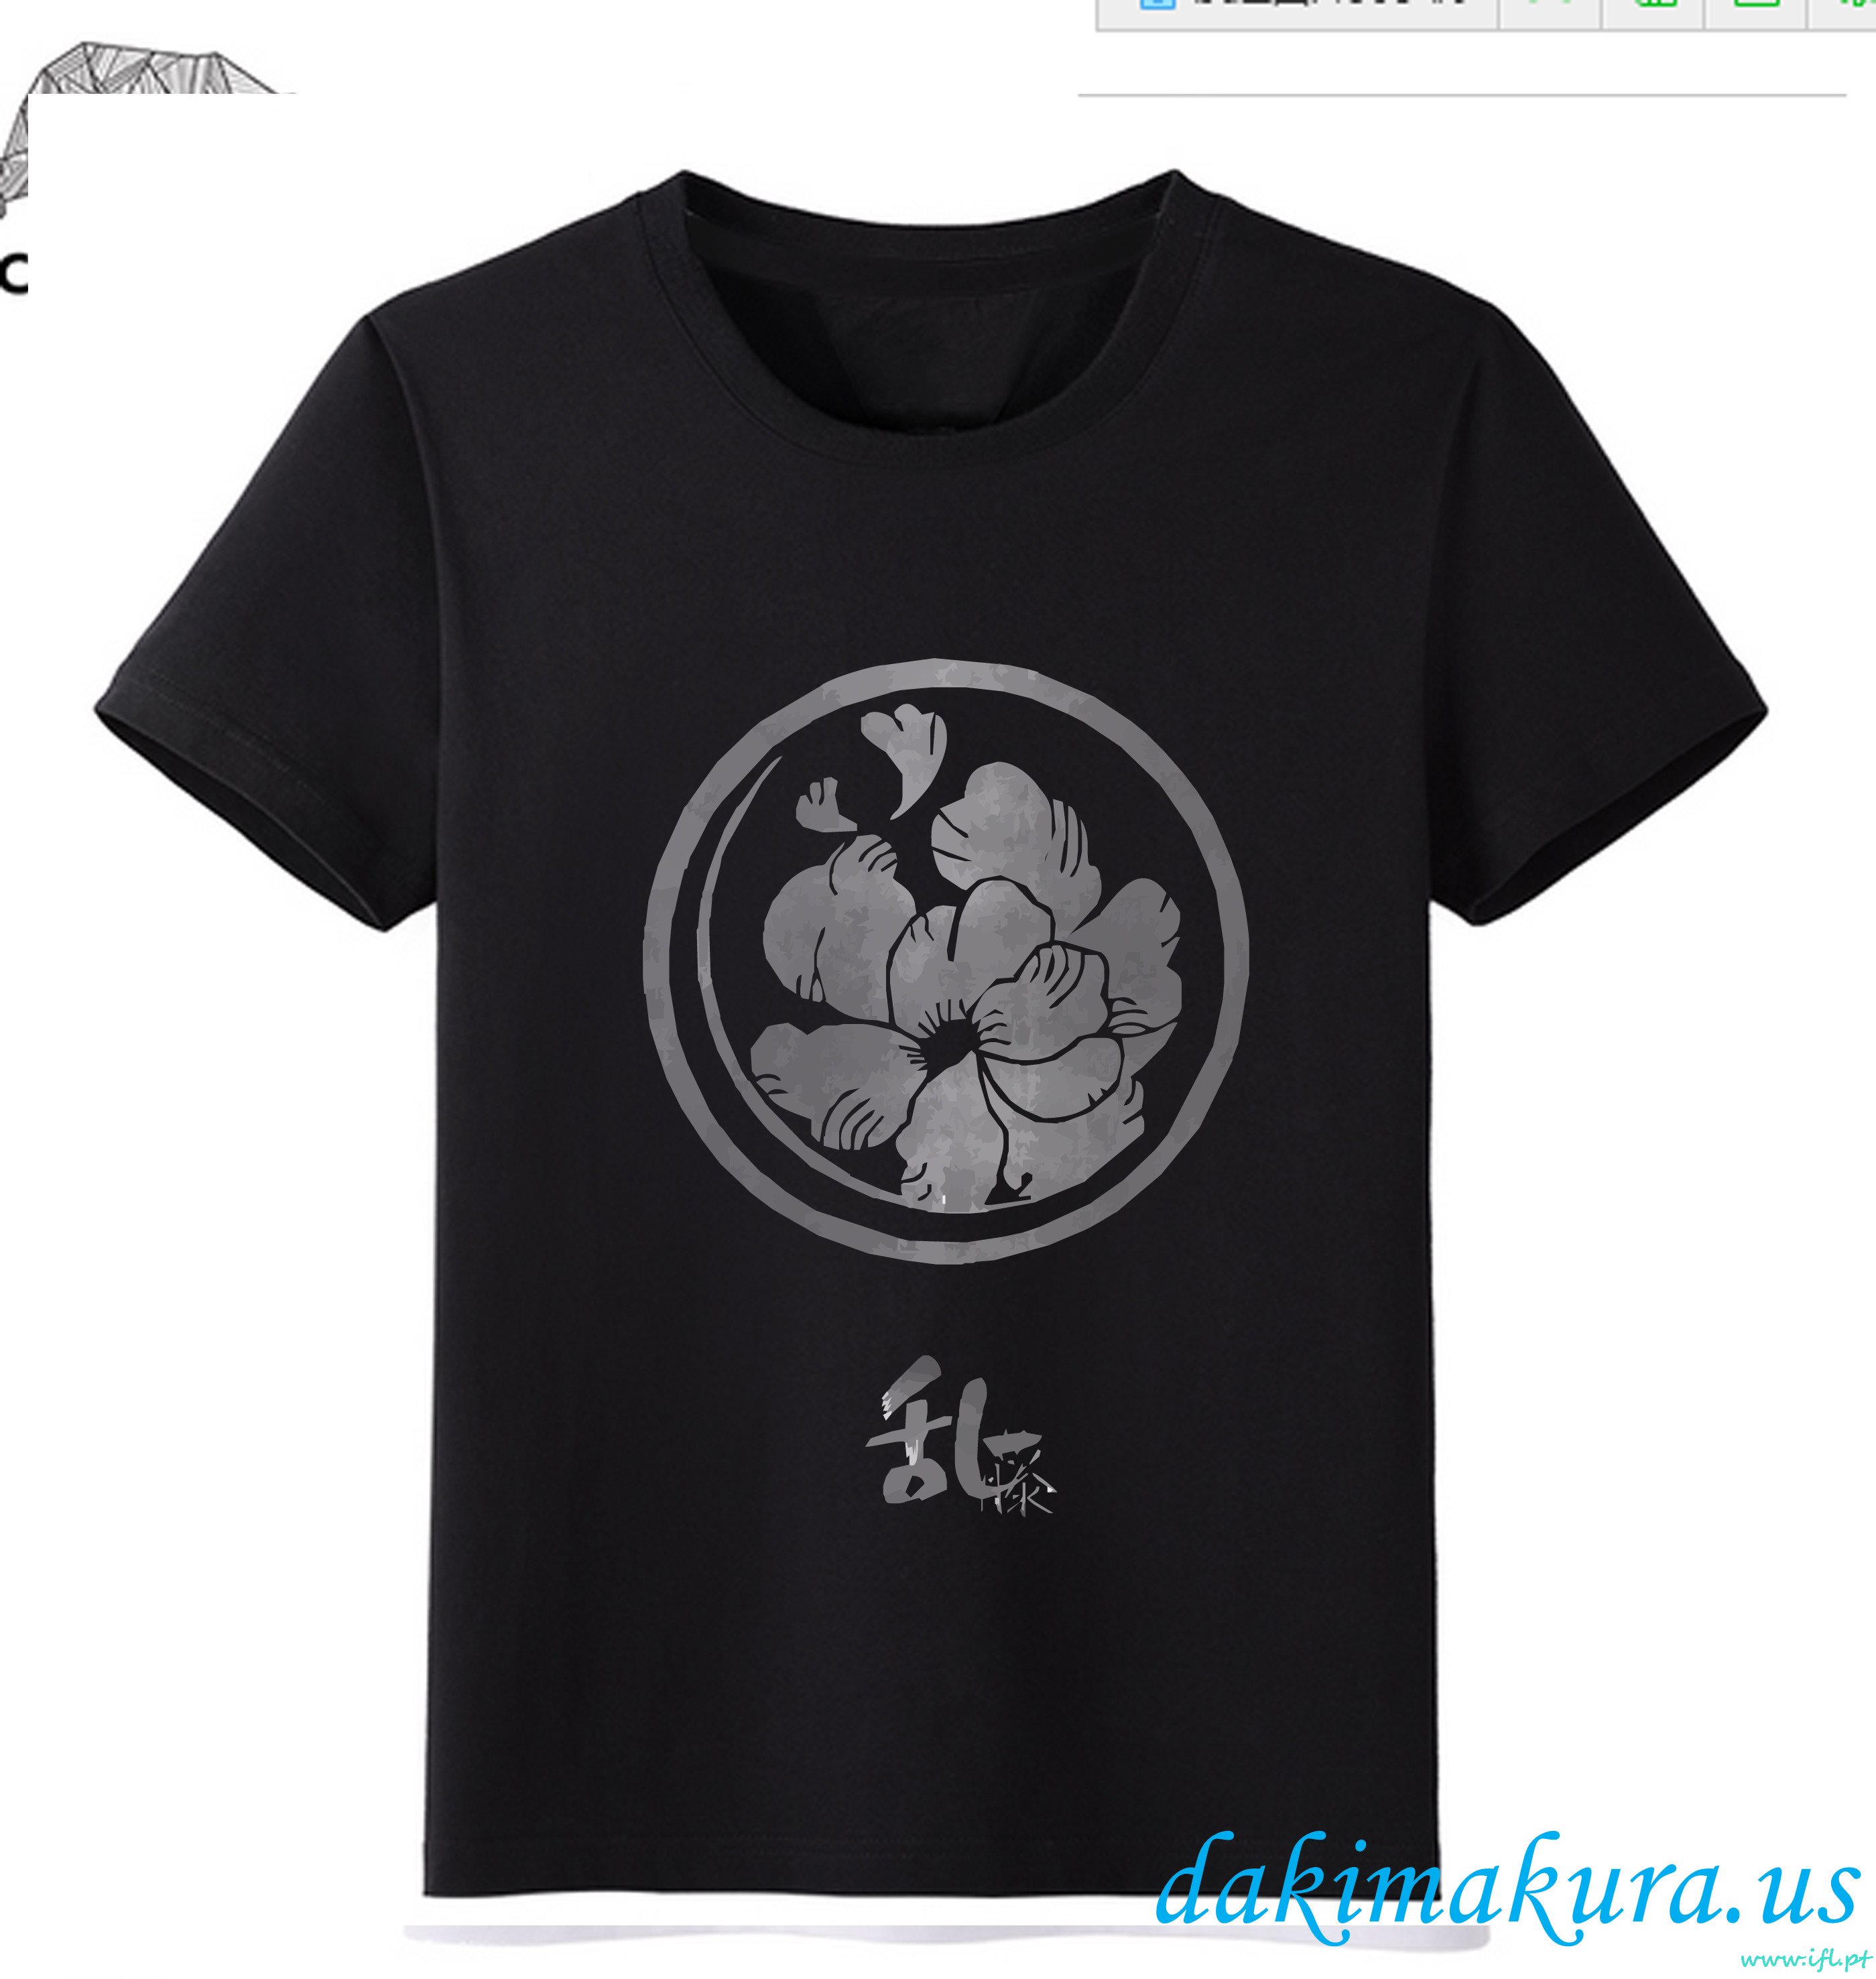 Ucuz Siyah - Çin Fabrikadan Touken Ranbu çevrimiçi Erkekler Anime Moda T-shirt